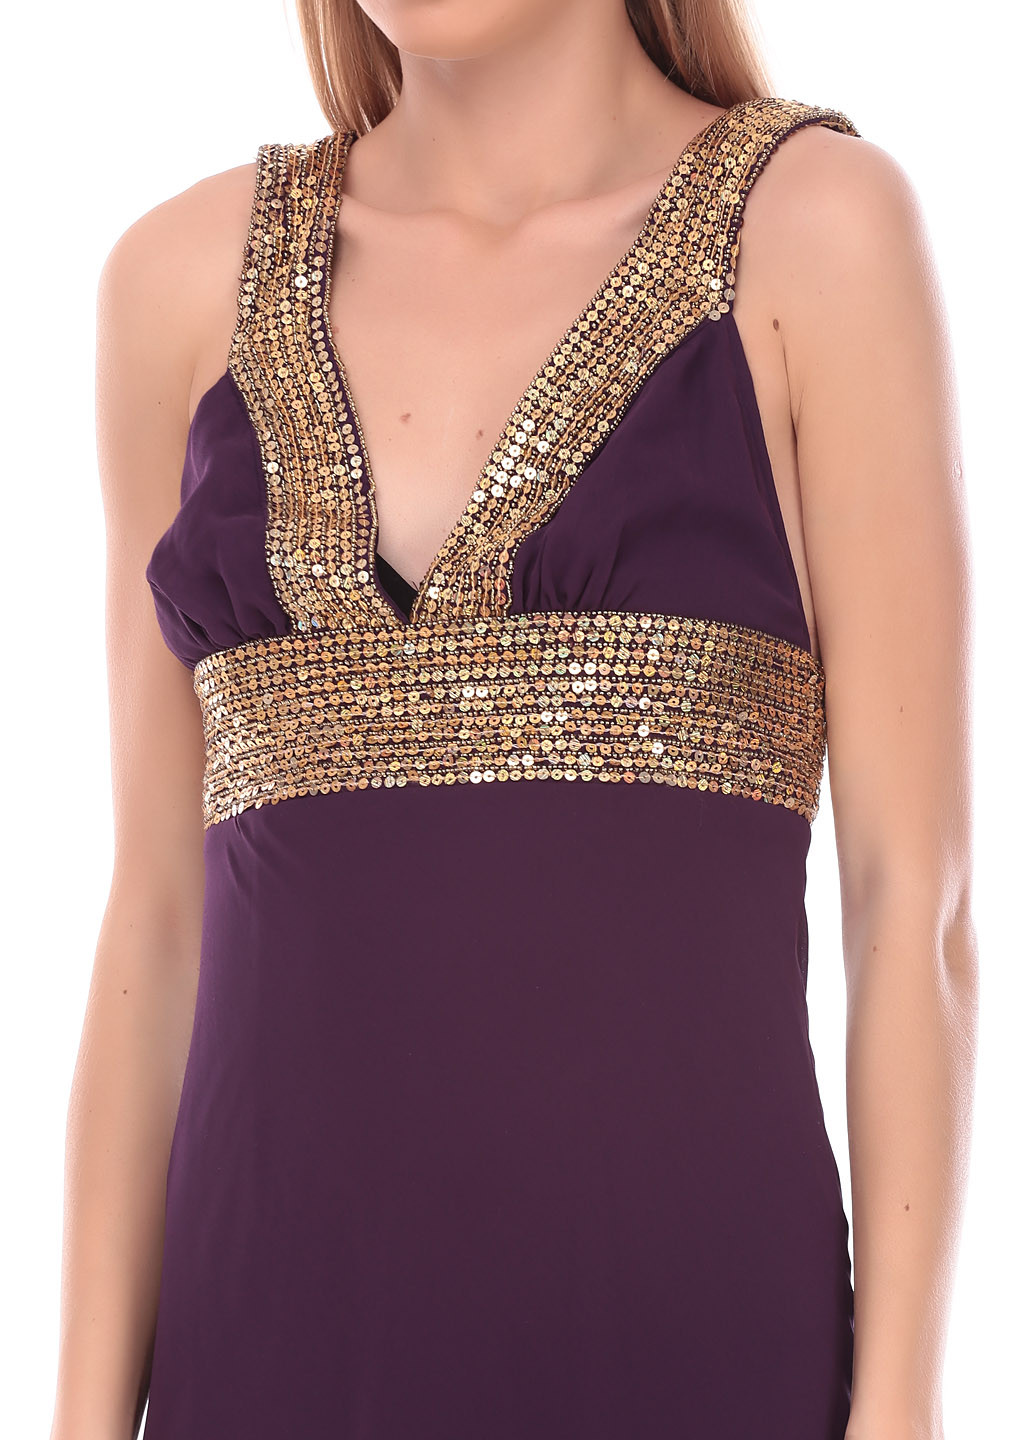 Фиолетовое вечернее платье макси Laura Scott однотонное